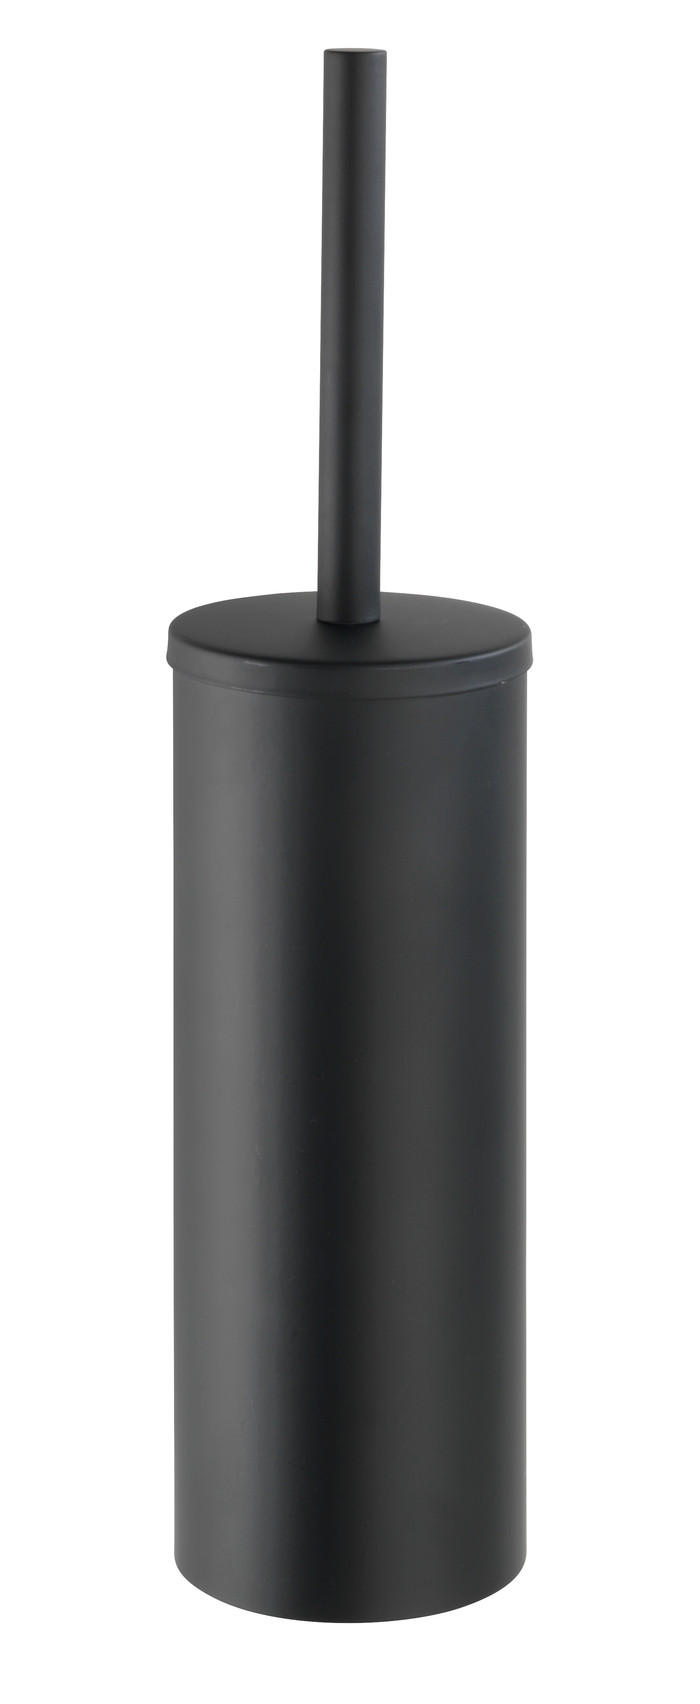 TOALETTBORSTSET i metall  plast   - svart, Design, metall/plast (12,4/47,5/18,8cm)